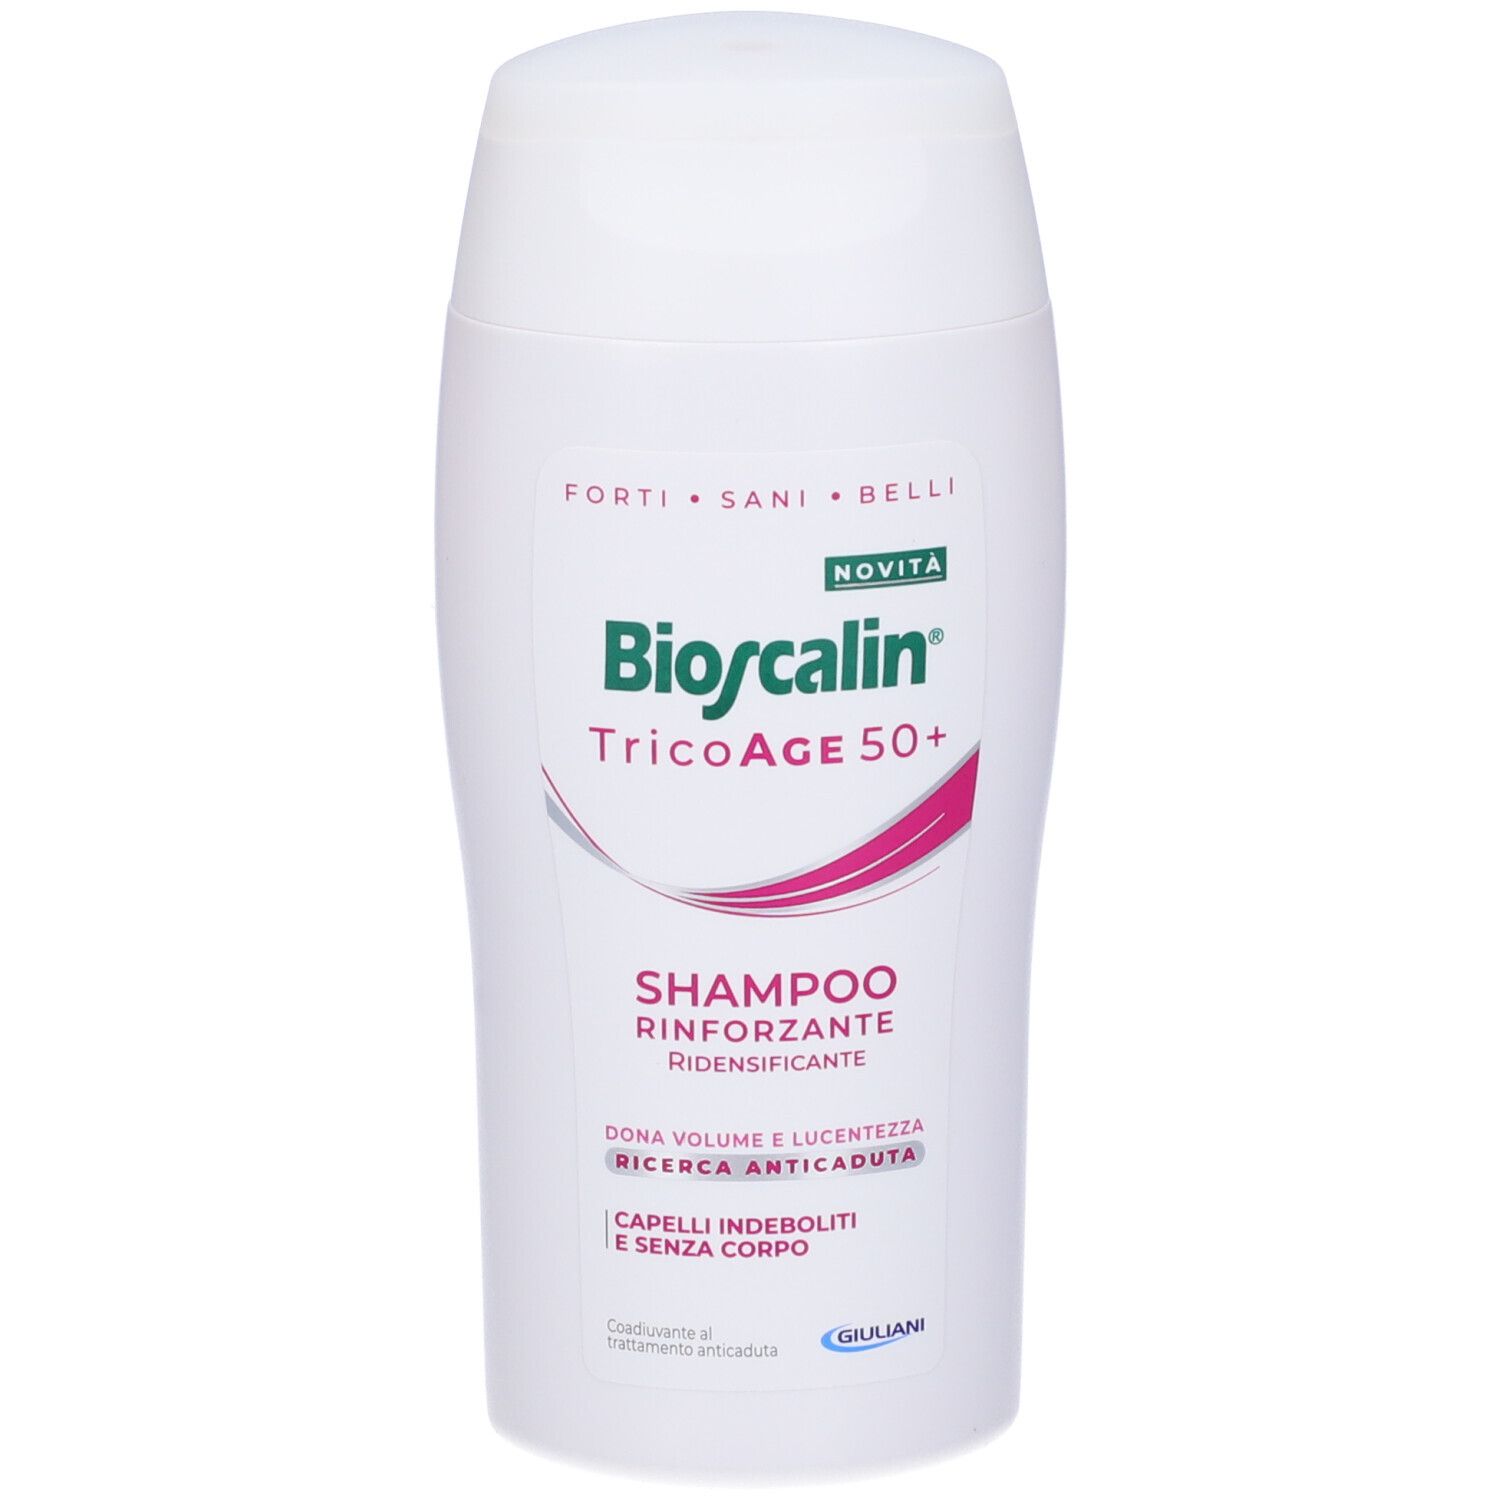 Image of Bioscalin TricoAge 50+ Shampoo Rinforzante Ridensificante